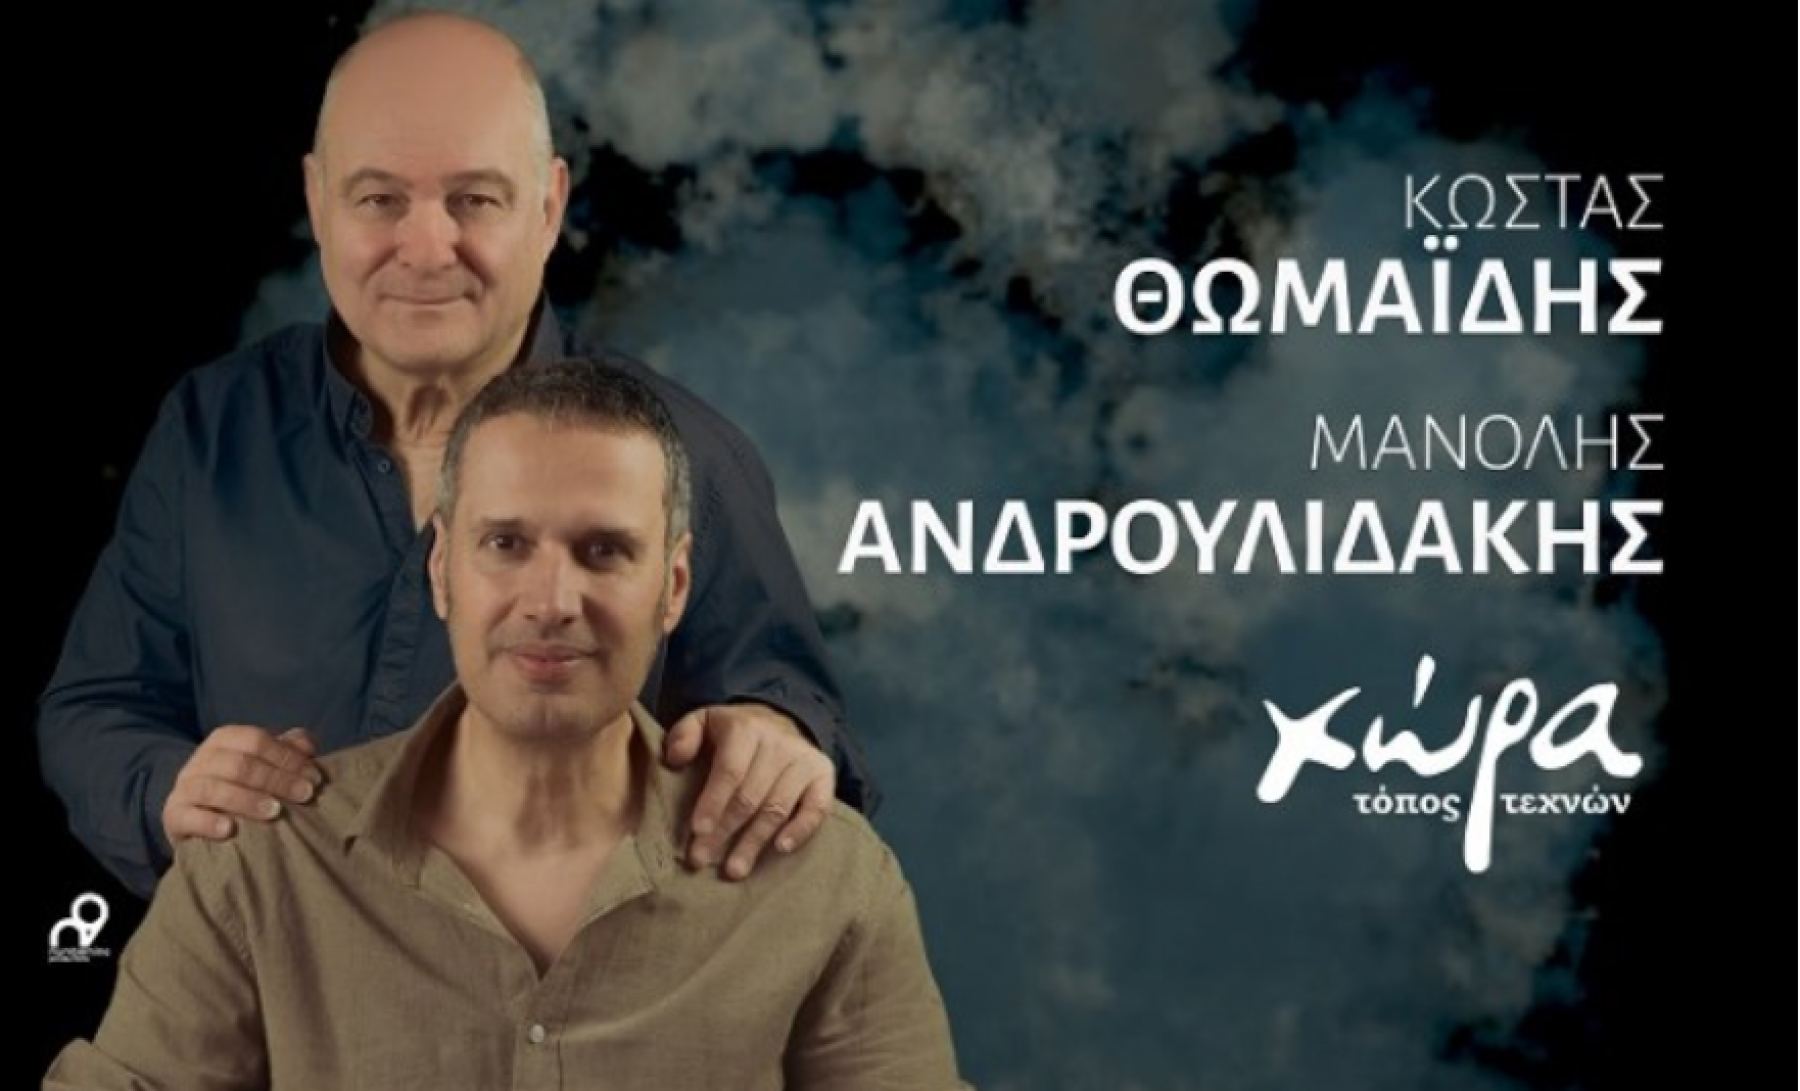 Κώστας Θωμαΐδης και Μανόλης Ανδρουλιδάκης έρχονται στη “Χώρα” με τραγούδια που διηγούνται τις ιστορίες μας…